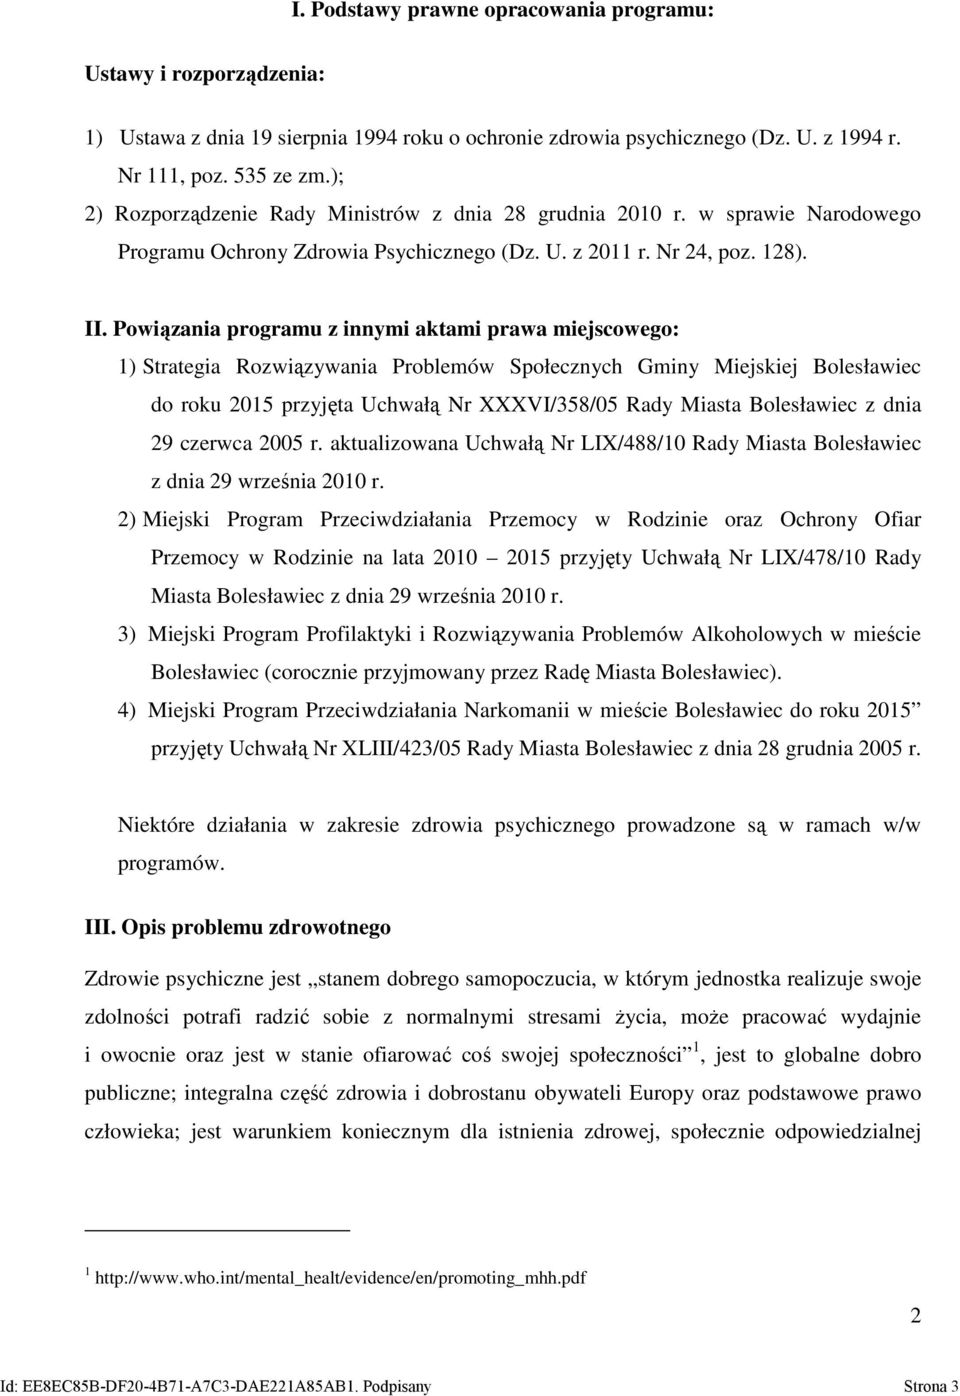 Powiązania programu z innymi aktami prawa miejscowego: 1) Strategia Rozwiązywania Problemów Społecznych Gminy Miejskiej Bolesławiec do roku 2015 przyjęta Uchwałą Nr XXXVI/358/05 Rady Miasta